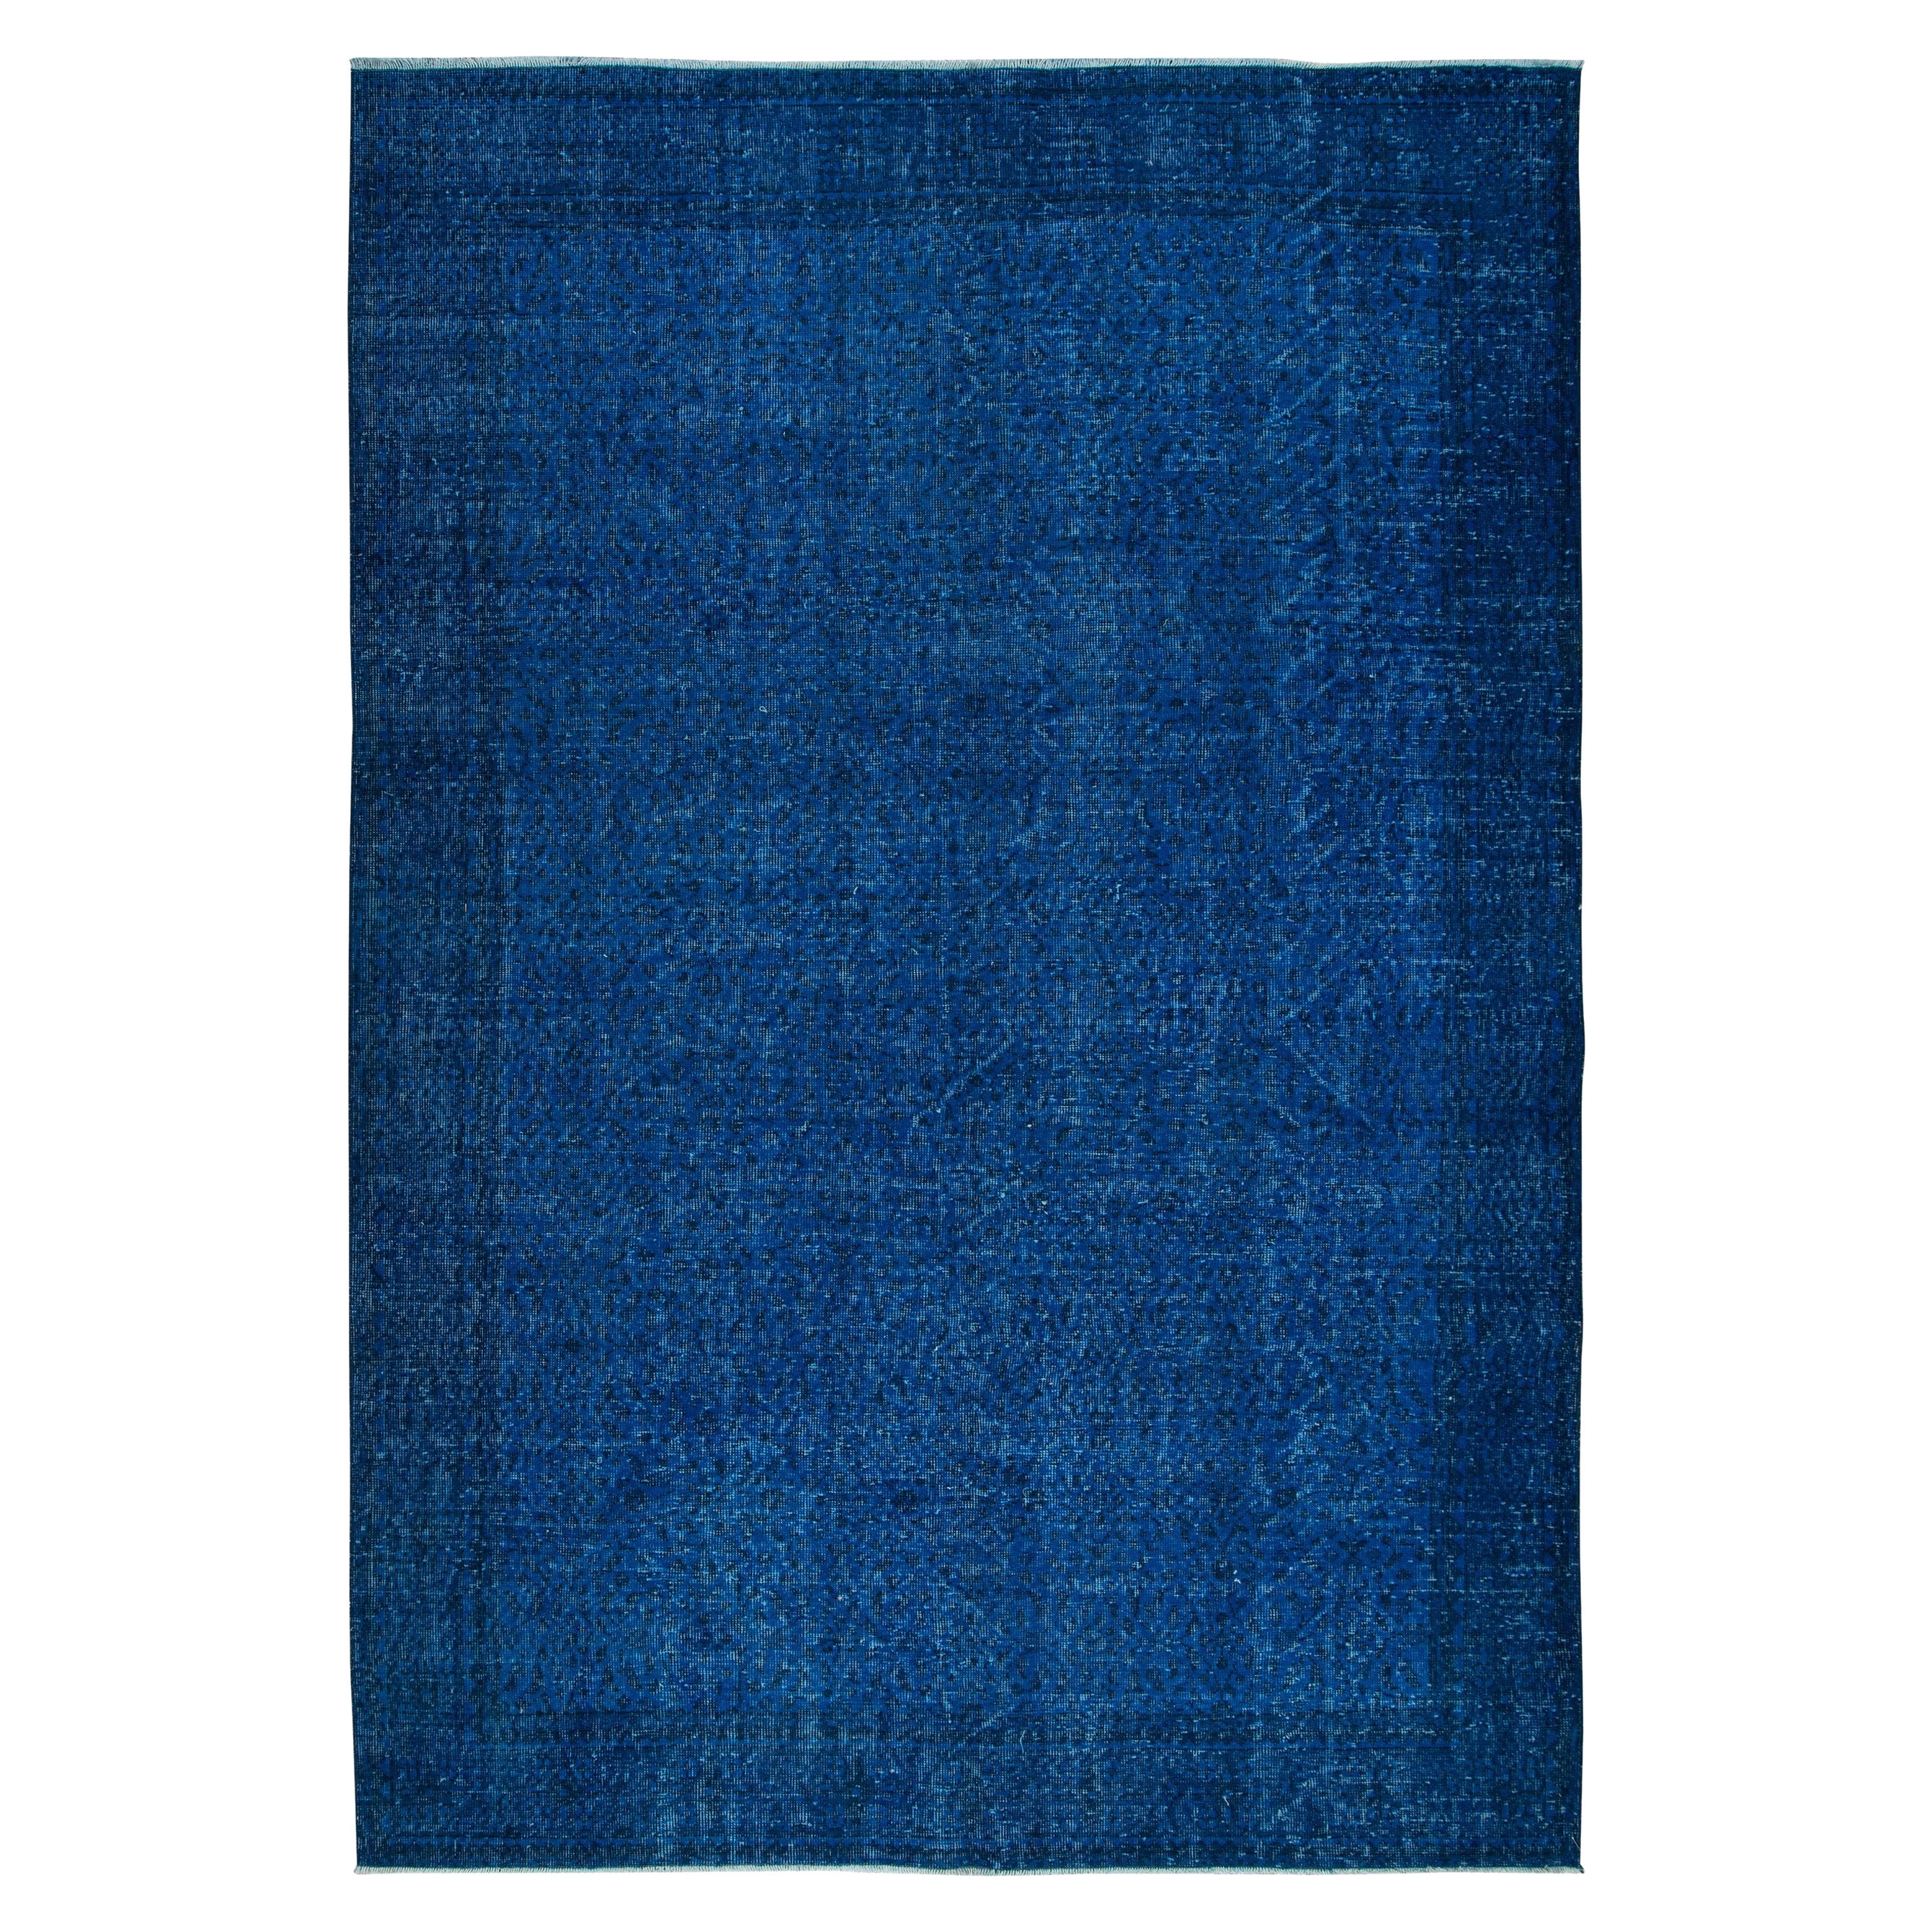 7x10 Ft Modern Blue Area Rug en laine et coton, noué à la main en Turquie